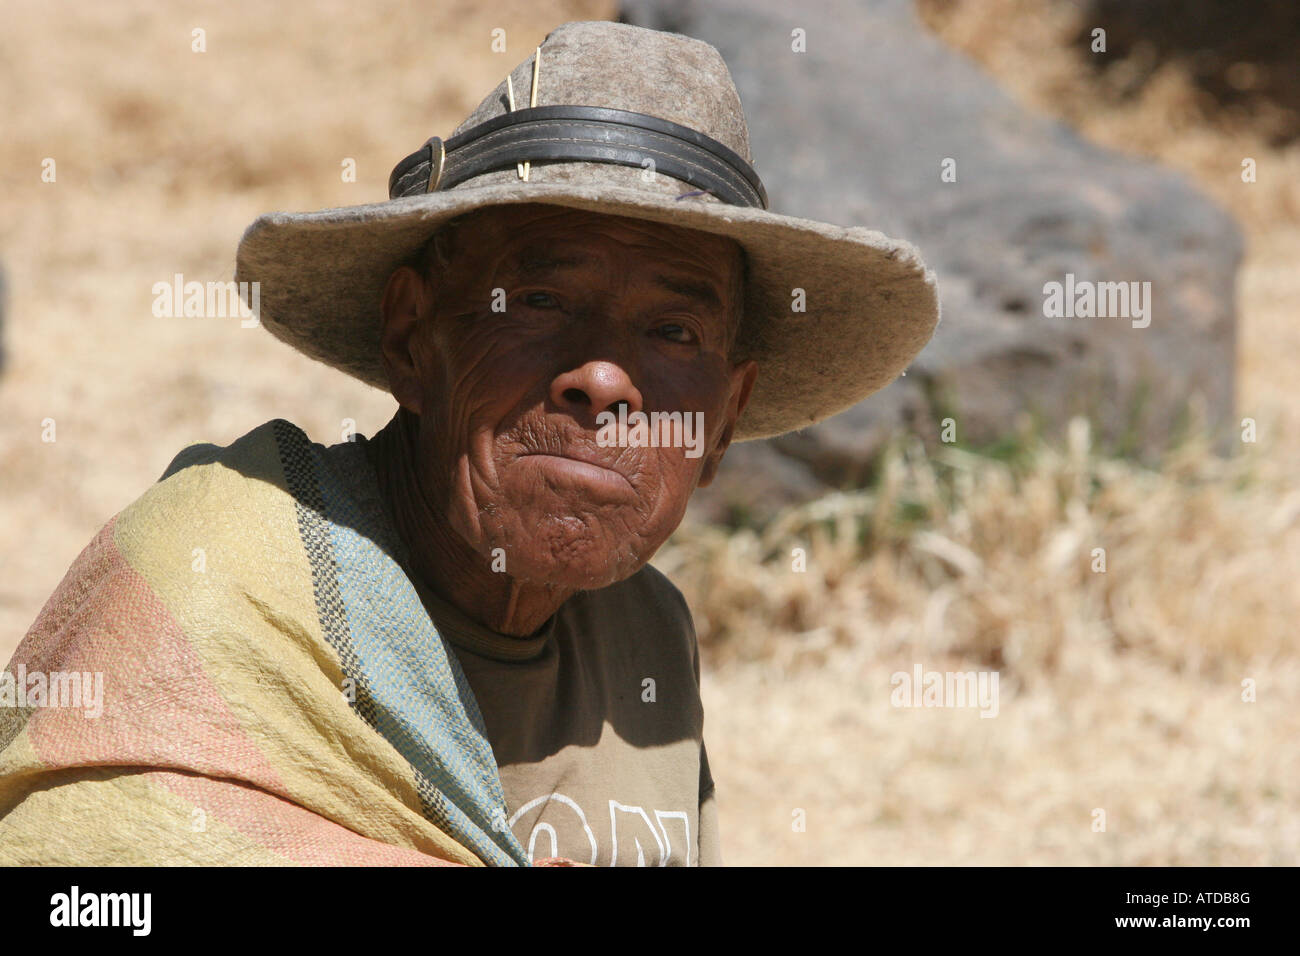 Native Peruvian man Peru Stock Photo